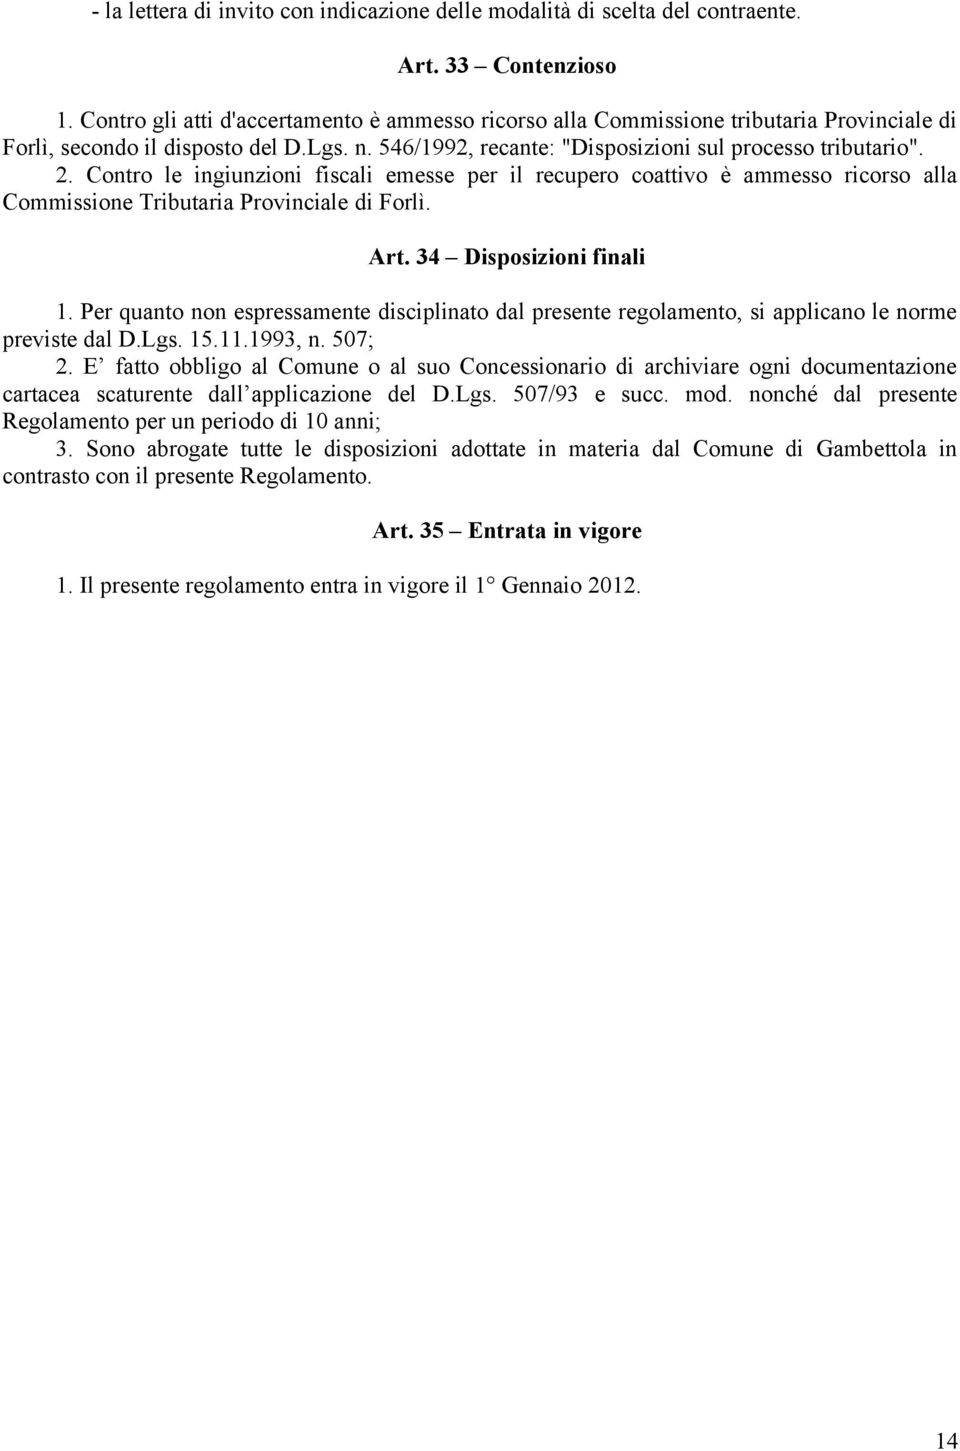 Contro le ingiunzioni fiscali emesse per il recupero coattivo è ammesso ricorso alla Commissione Tributaria Provinciale di Forlì. Art. 34 Disposizioni finali 1.